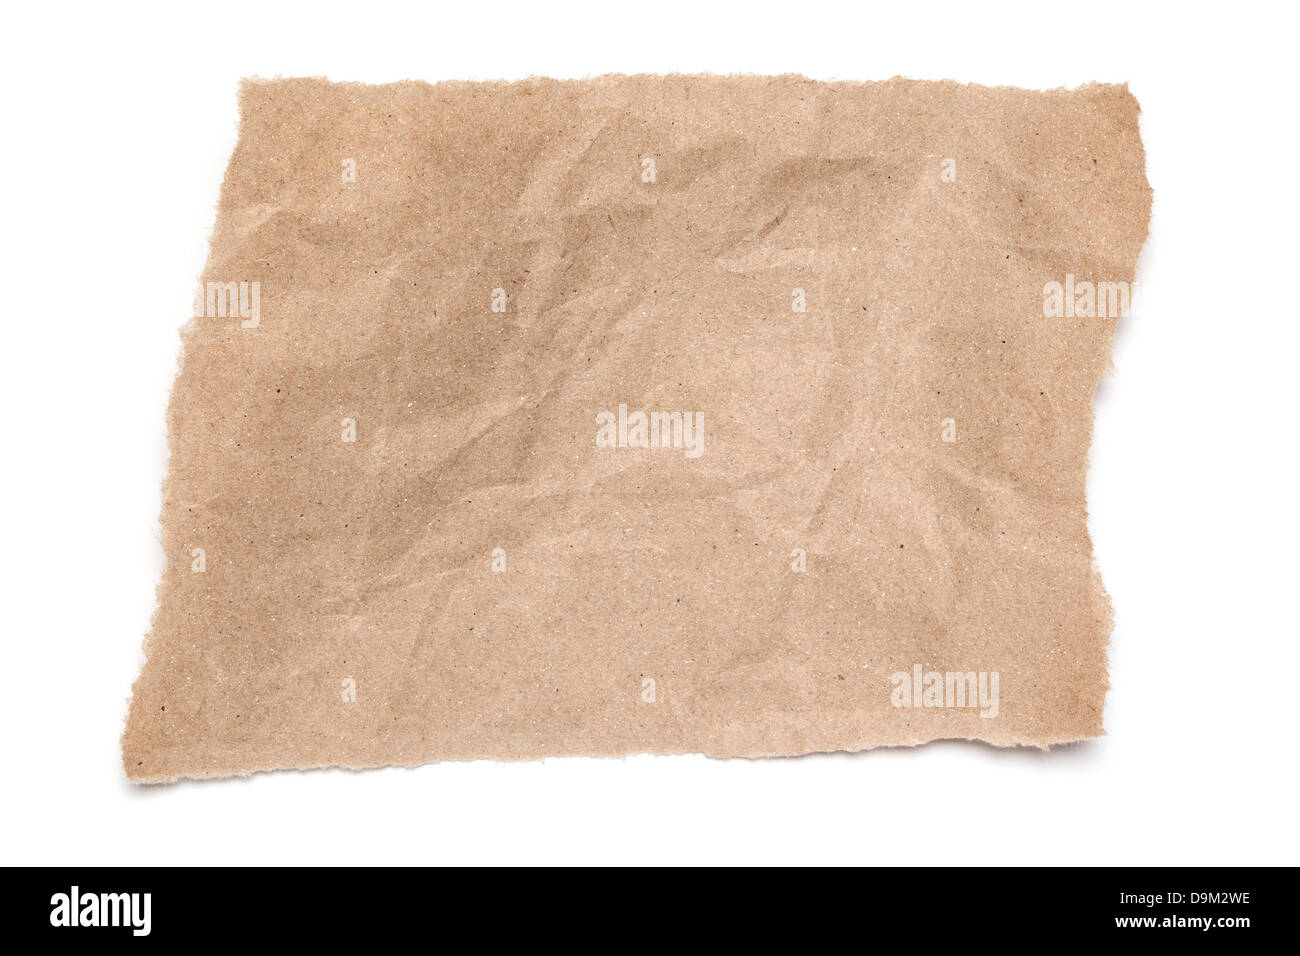 Desgarrado y doblado de papel marrón - un rip trozo de papel marrón arrugado, sobre fondo blanco con sombra suave. Foto de stock